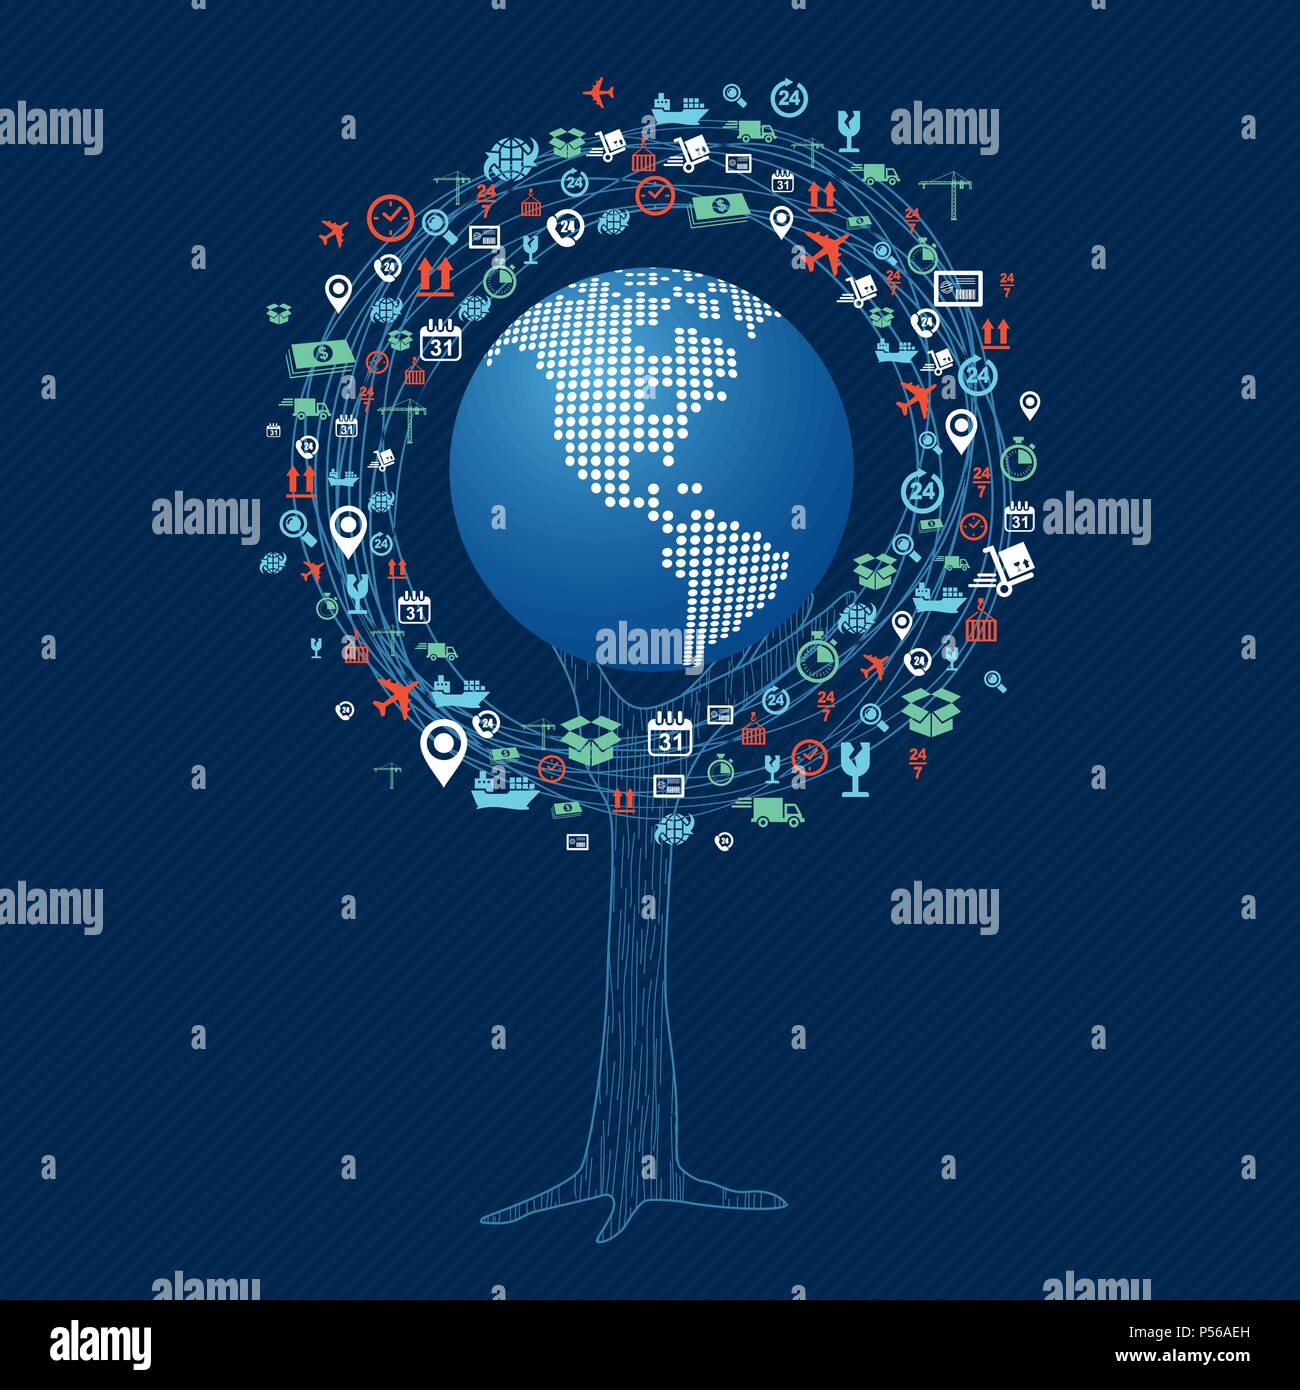 Baum mit Technologie world Konzept. Die globale Kommunikation Idee, internet Symbole und Symbol Dekoration. EPS 10 Vektor. Stock Vektor